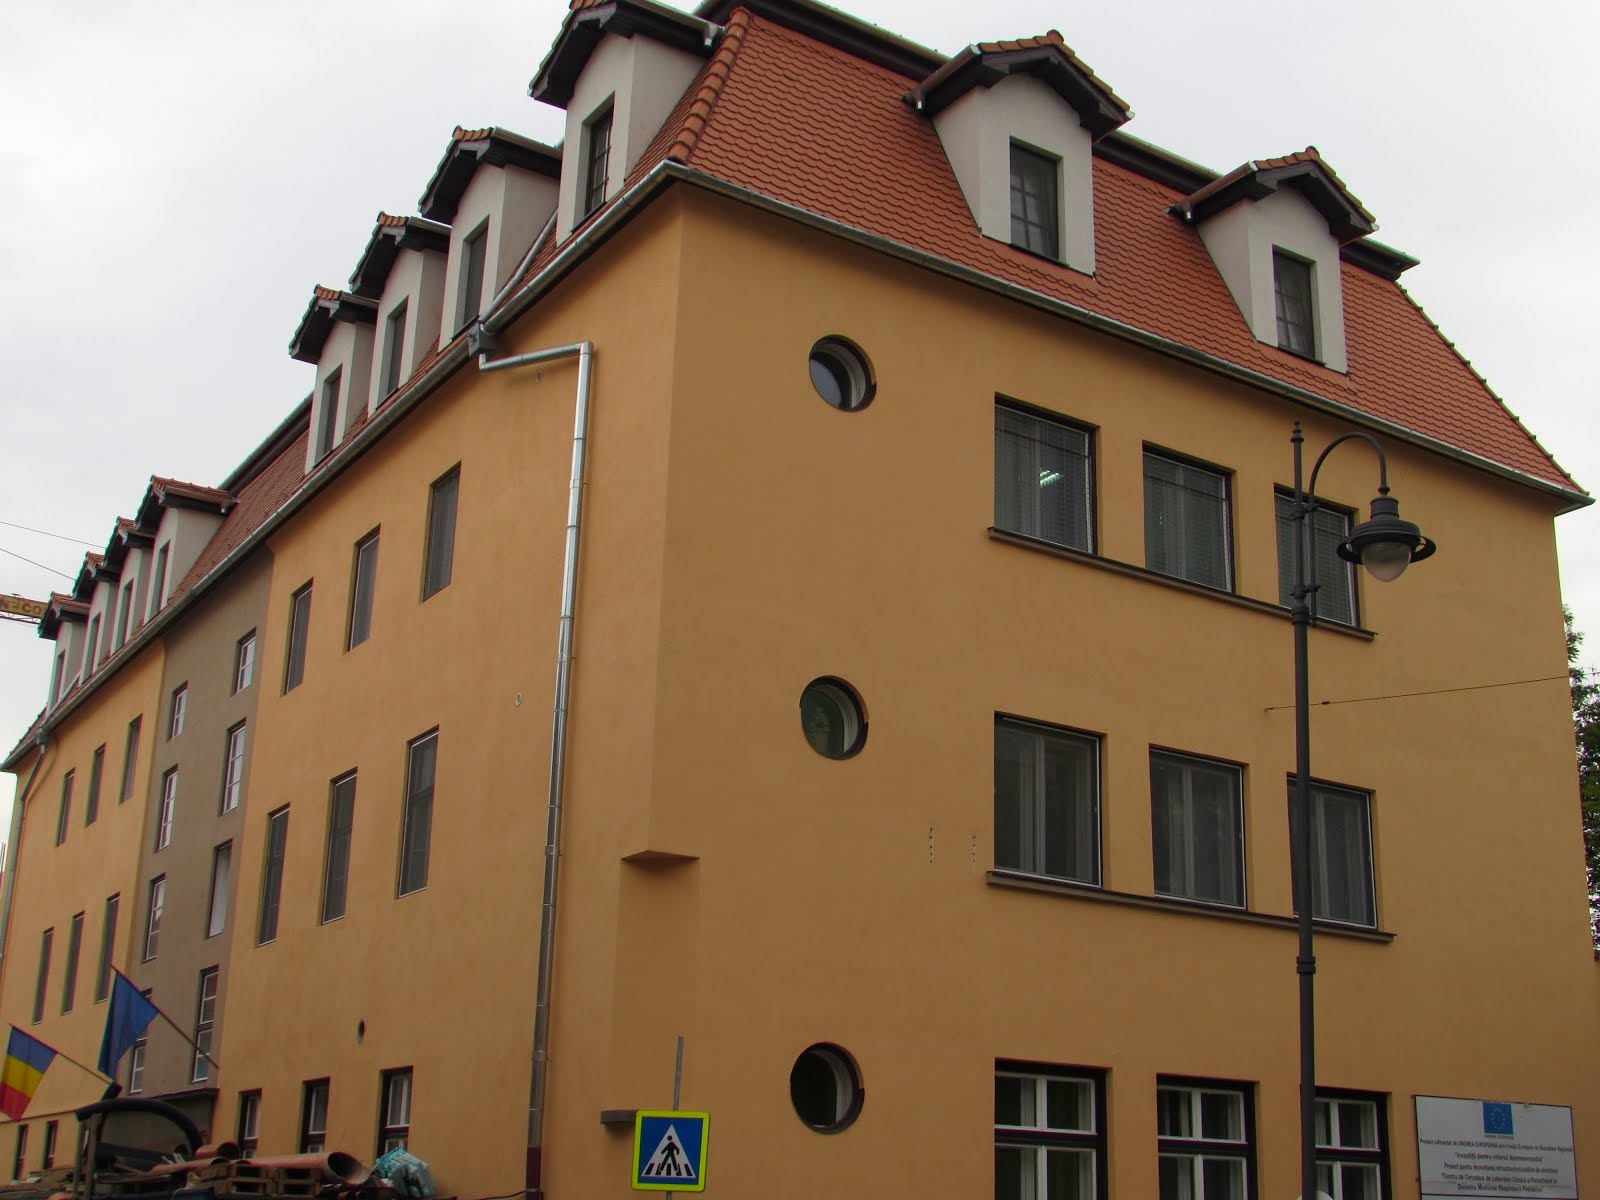 The Hospital in Sibiu